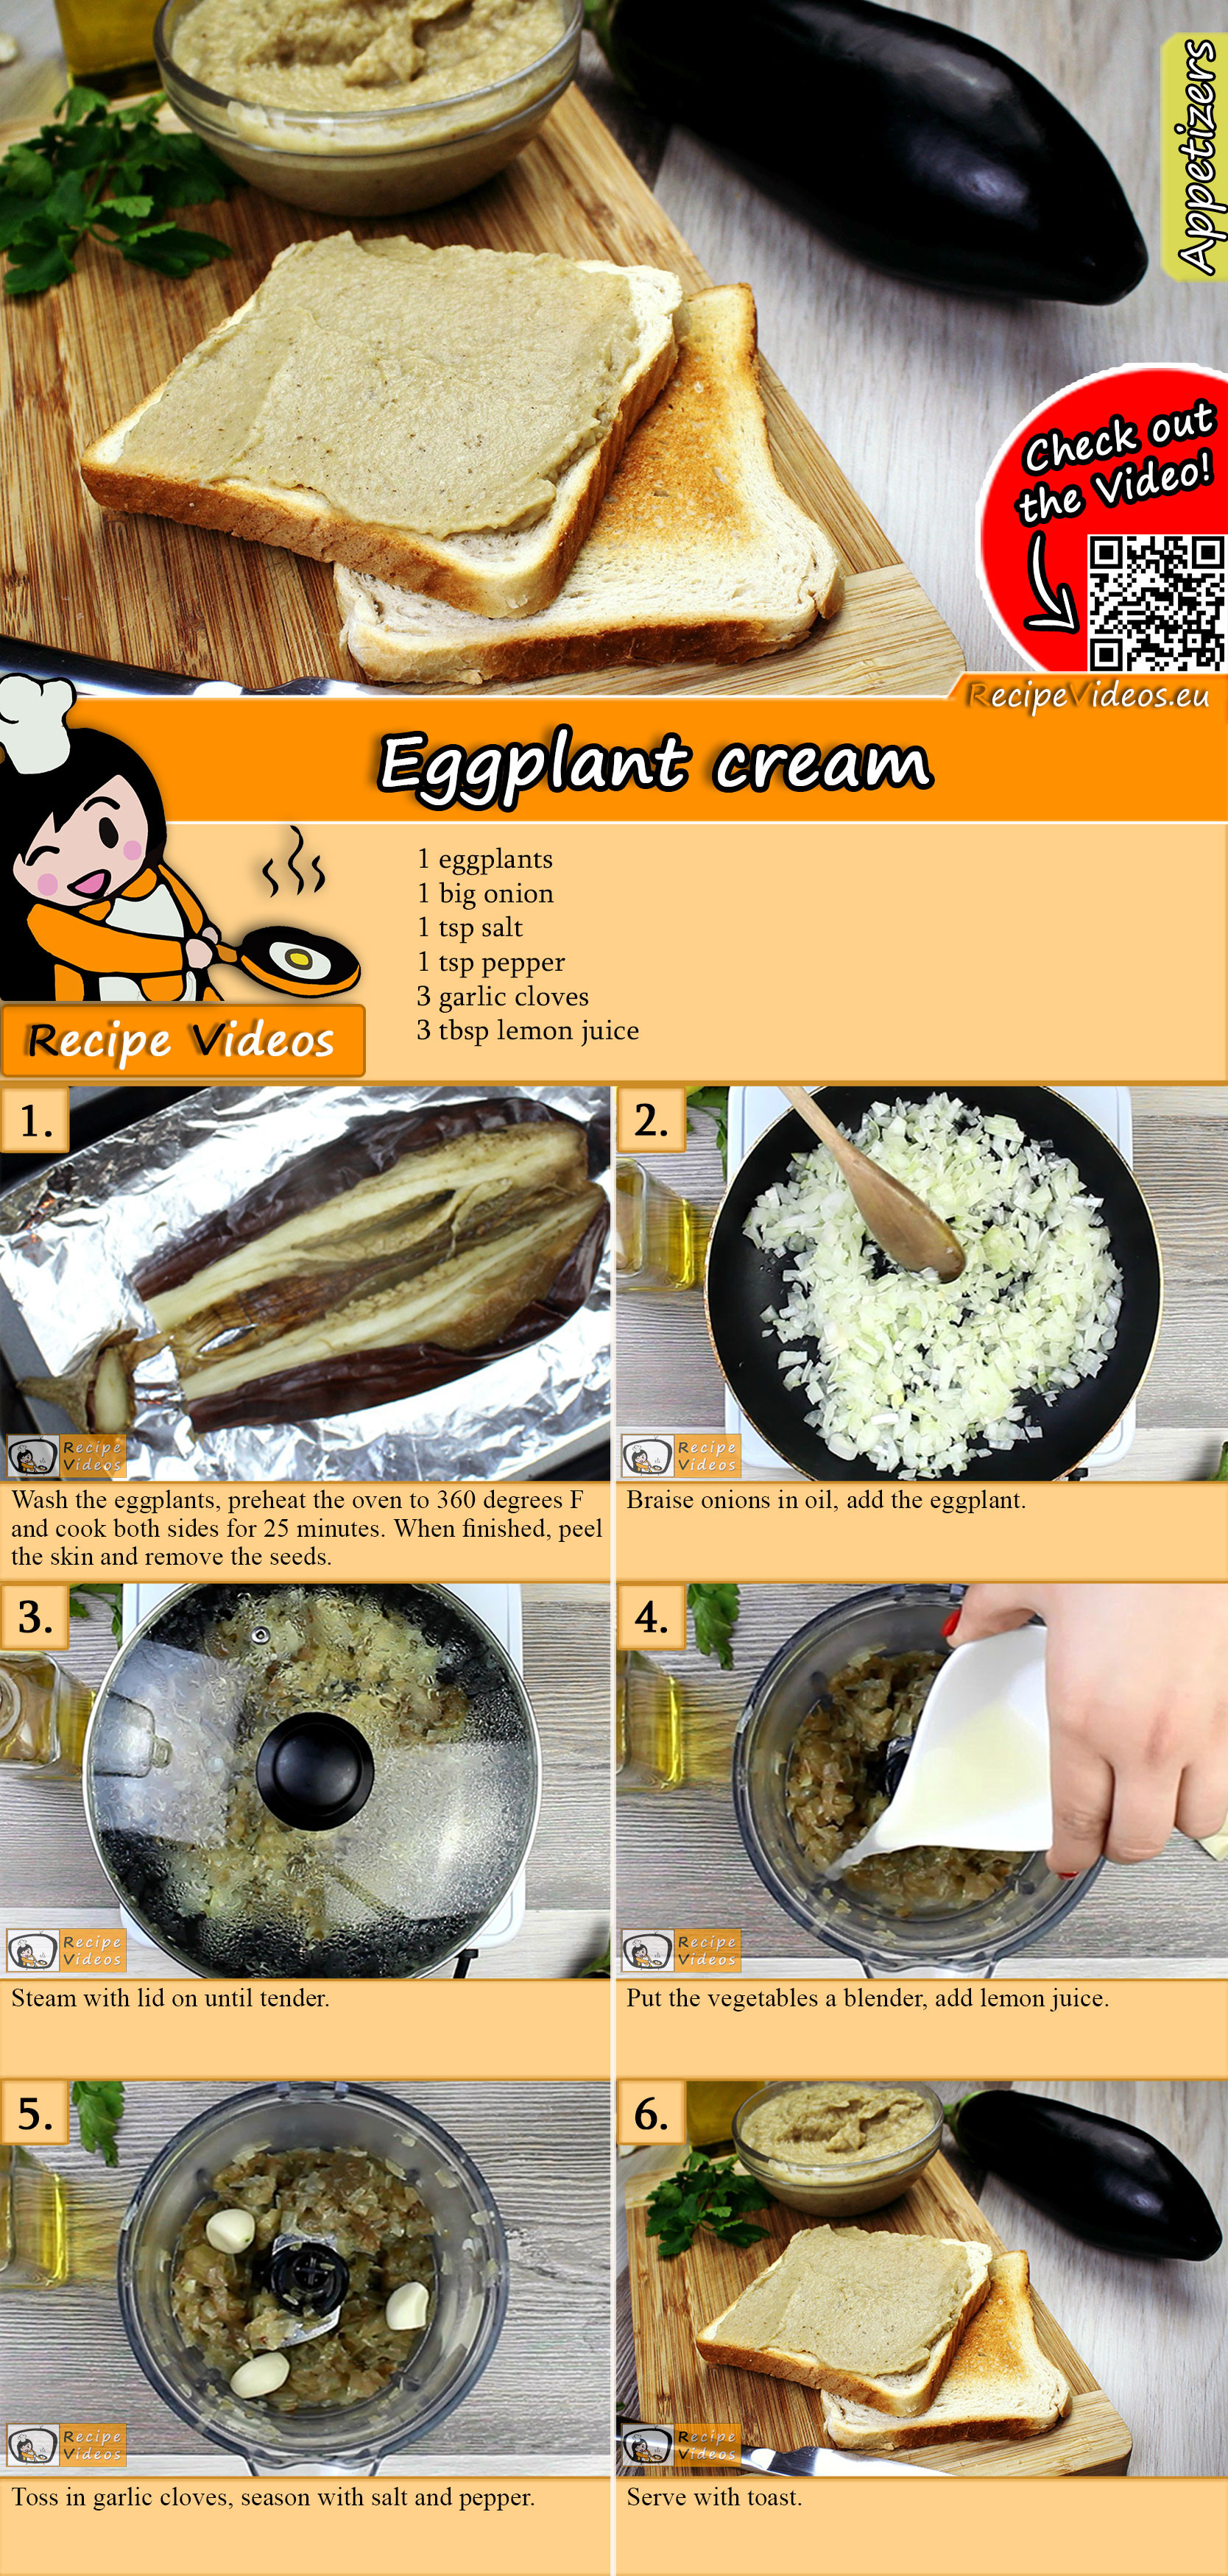 Eggplant cream recipe with video